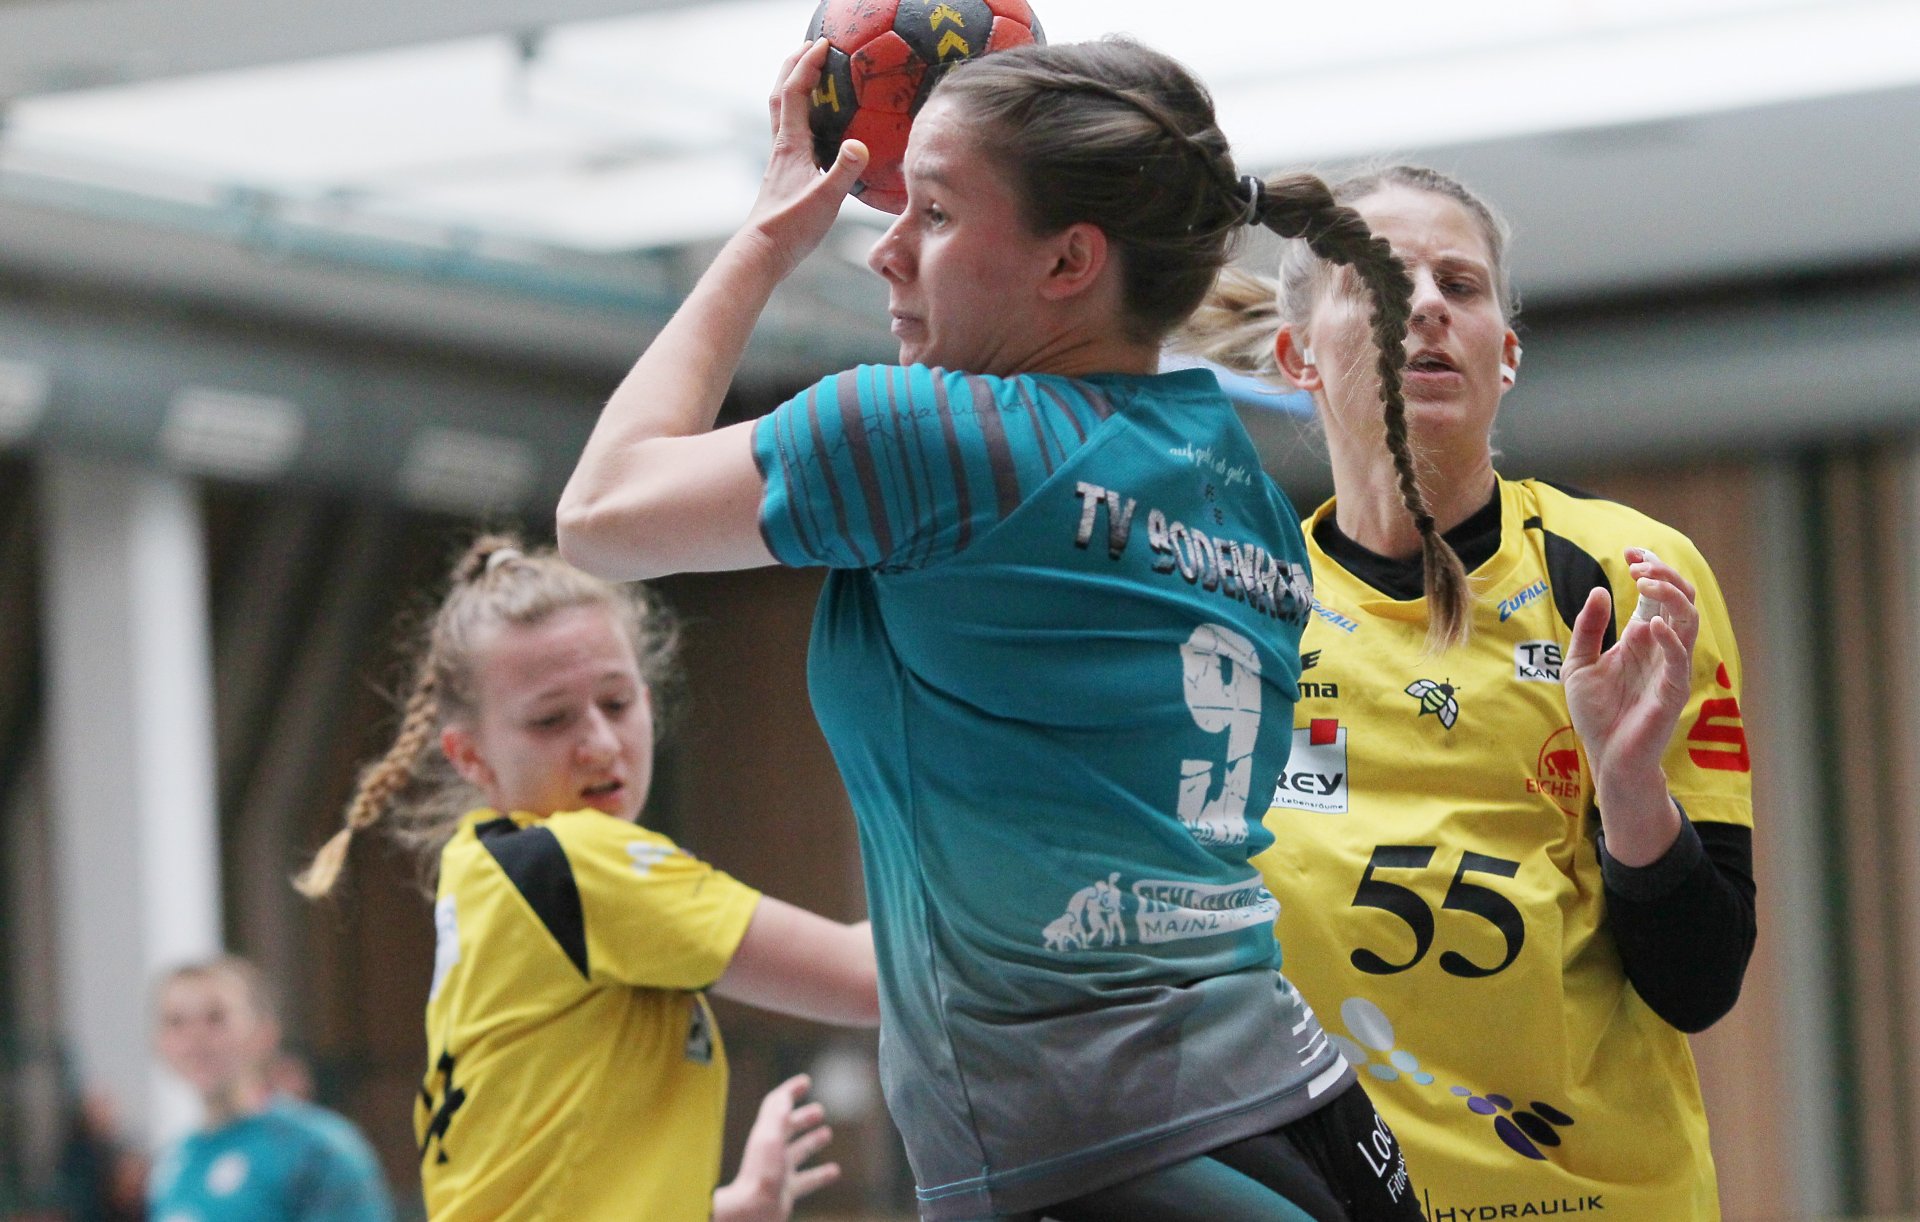 Zu einem Topteam der Oberliga hat sich in dem langen wettkampffreien Zeitraum  der TV Bodenheim entwickelt. Dafür war de positive Entwicklung von jungen Spielerinnen wie Spielmacherin Jona Reese entscheidend. 